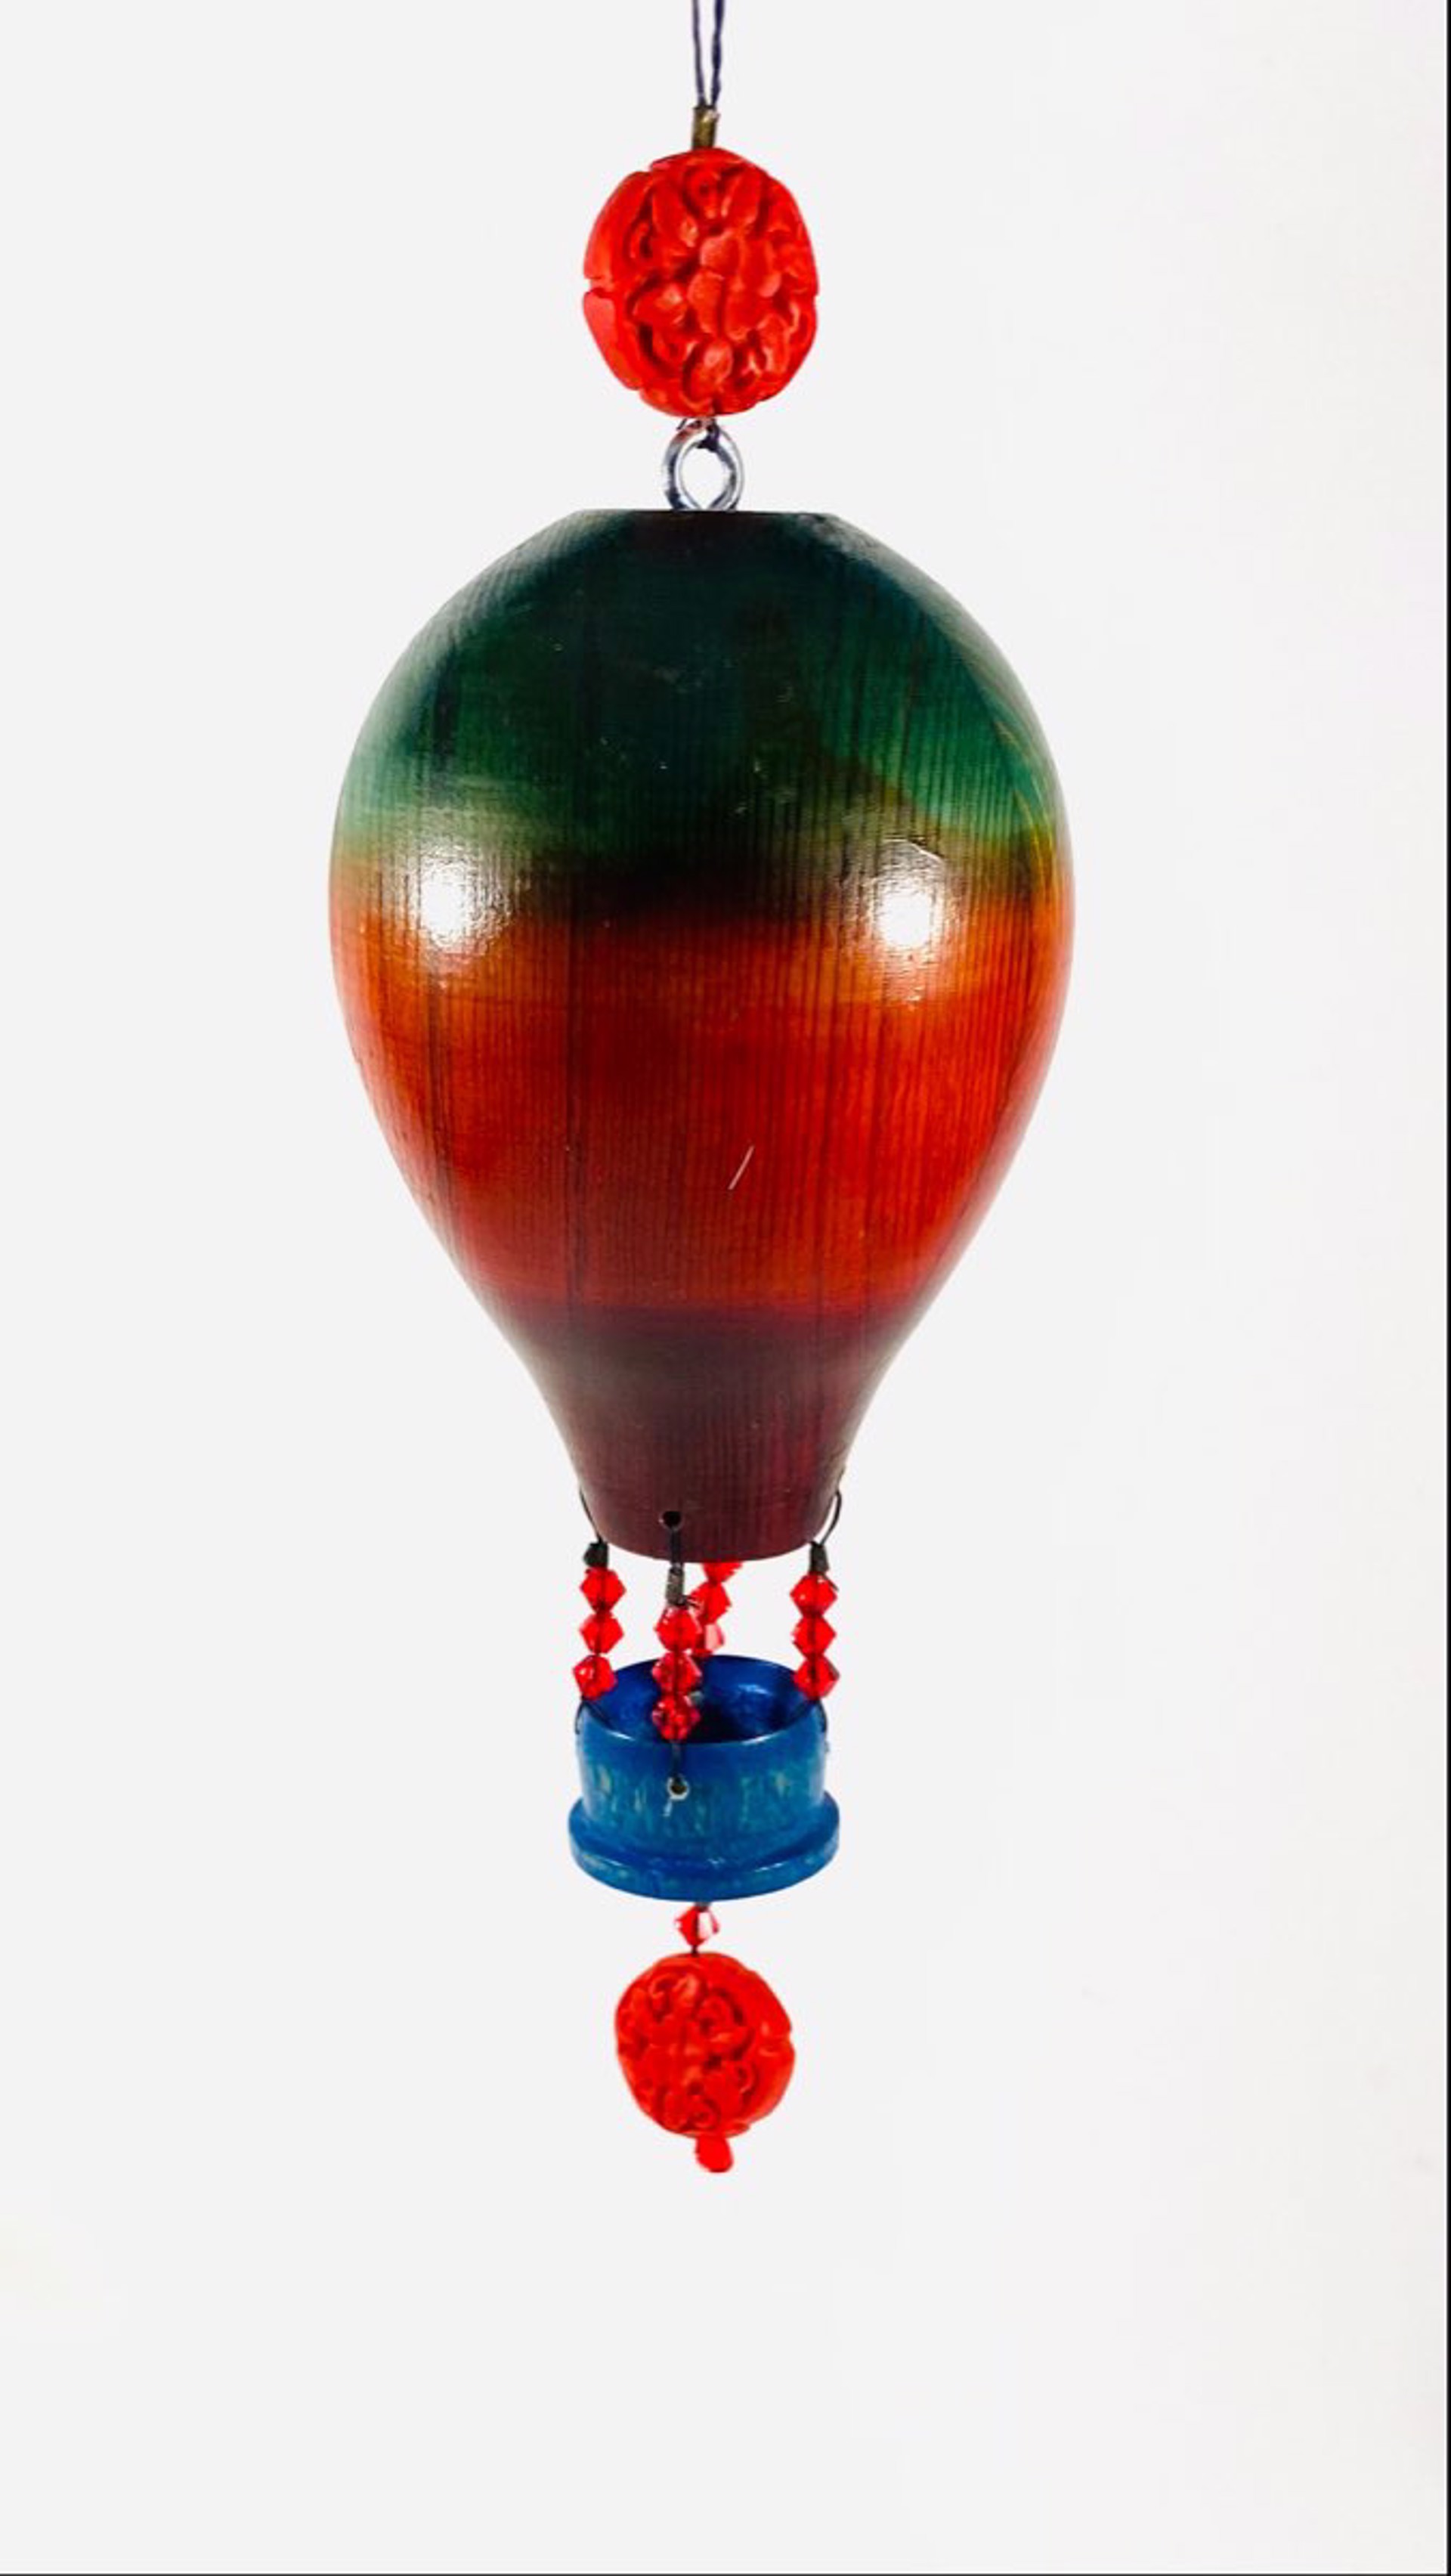 MT22-27 Whimsical Hot Air Balloon Ornament by Marc Tannenbaum